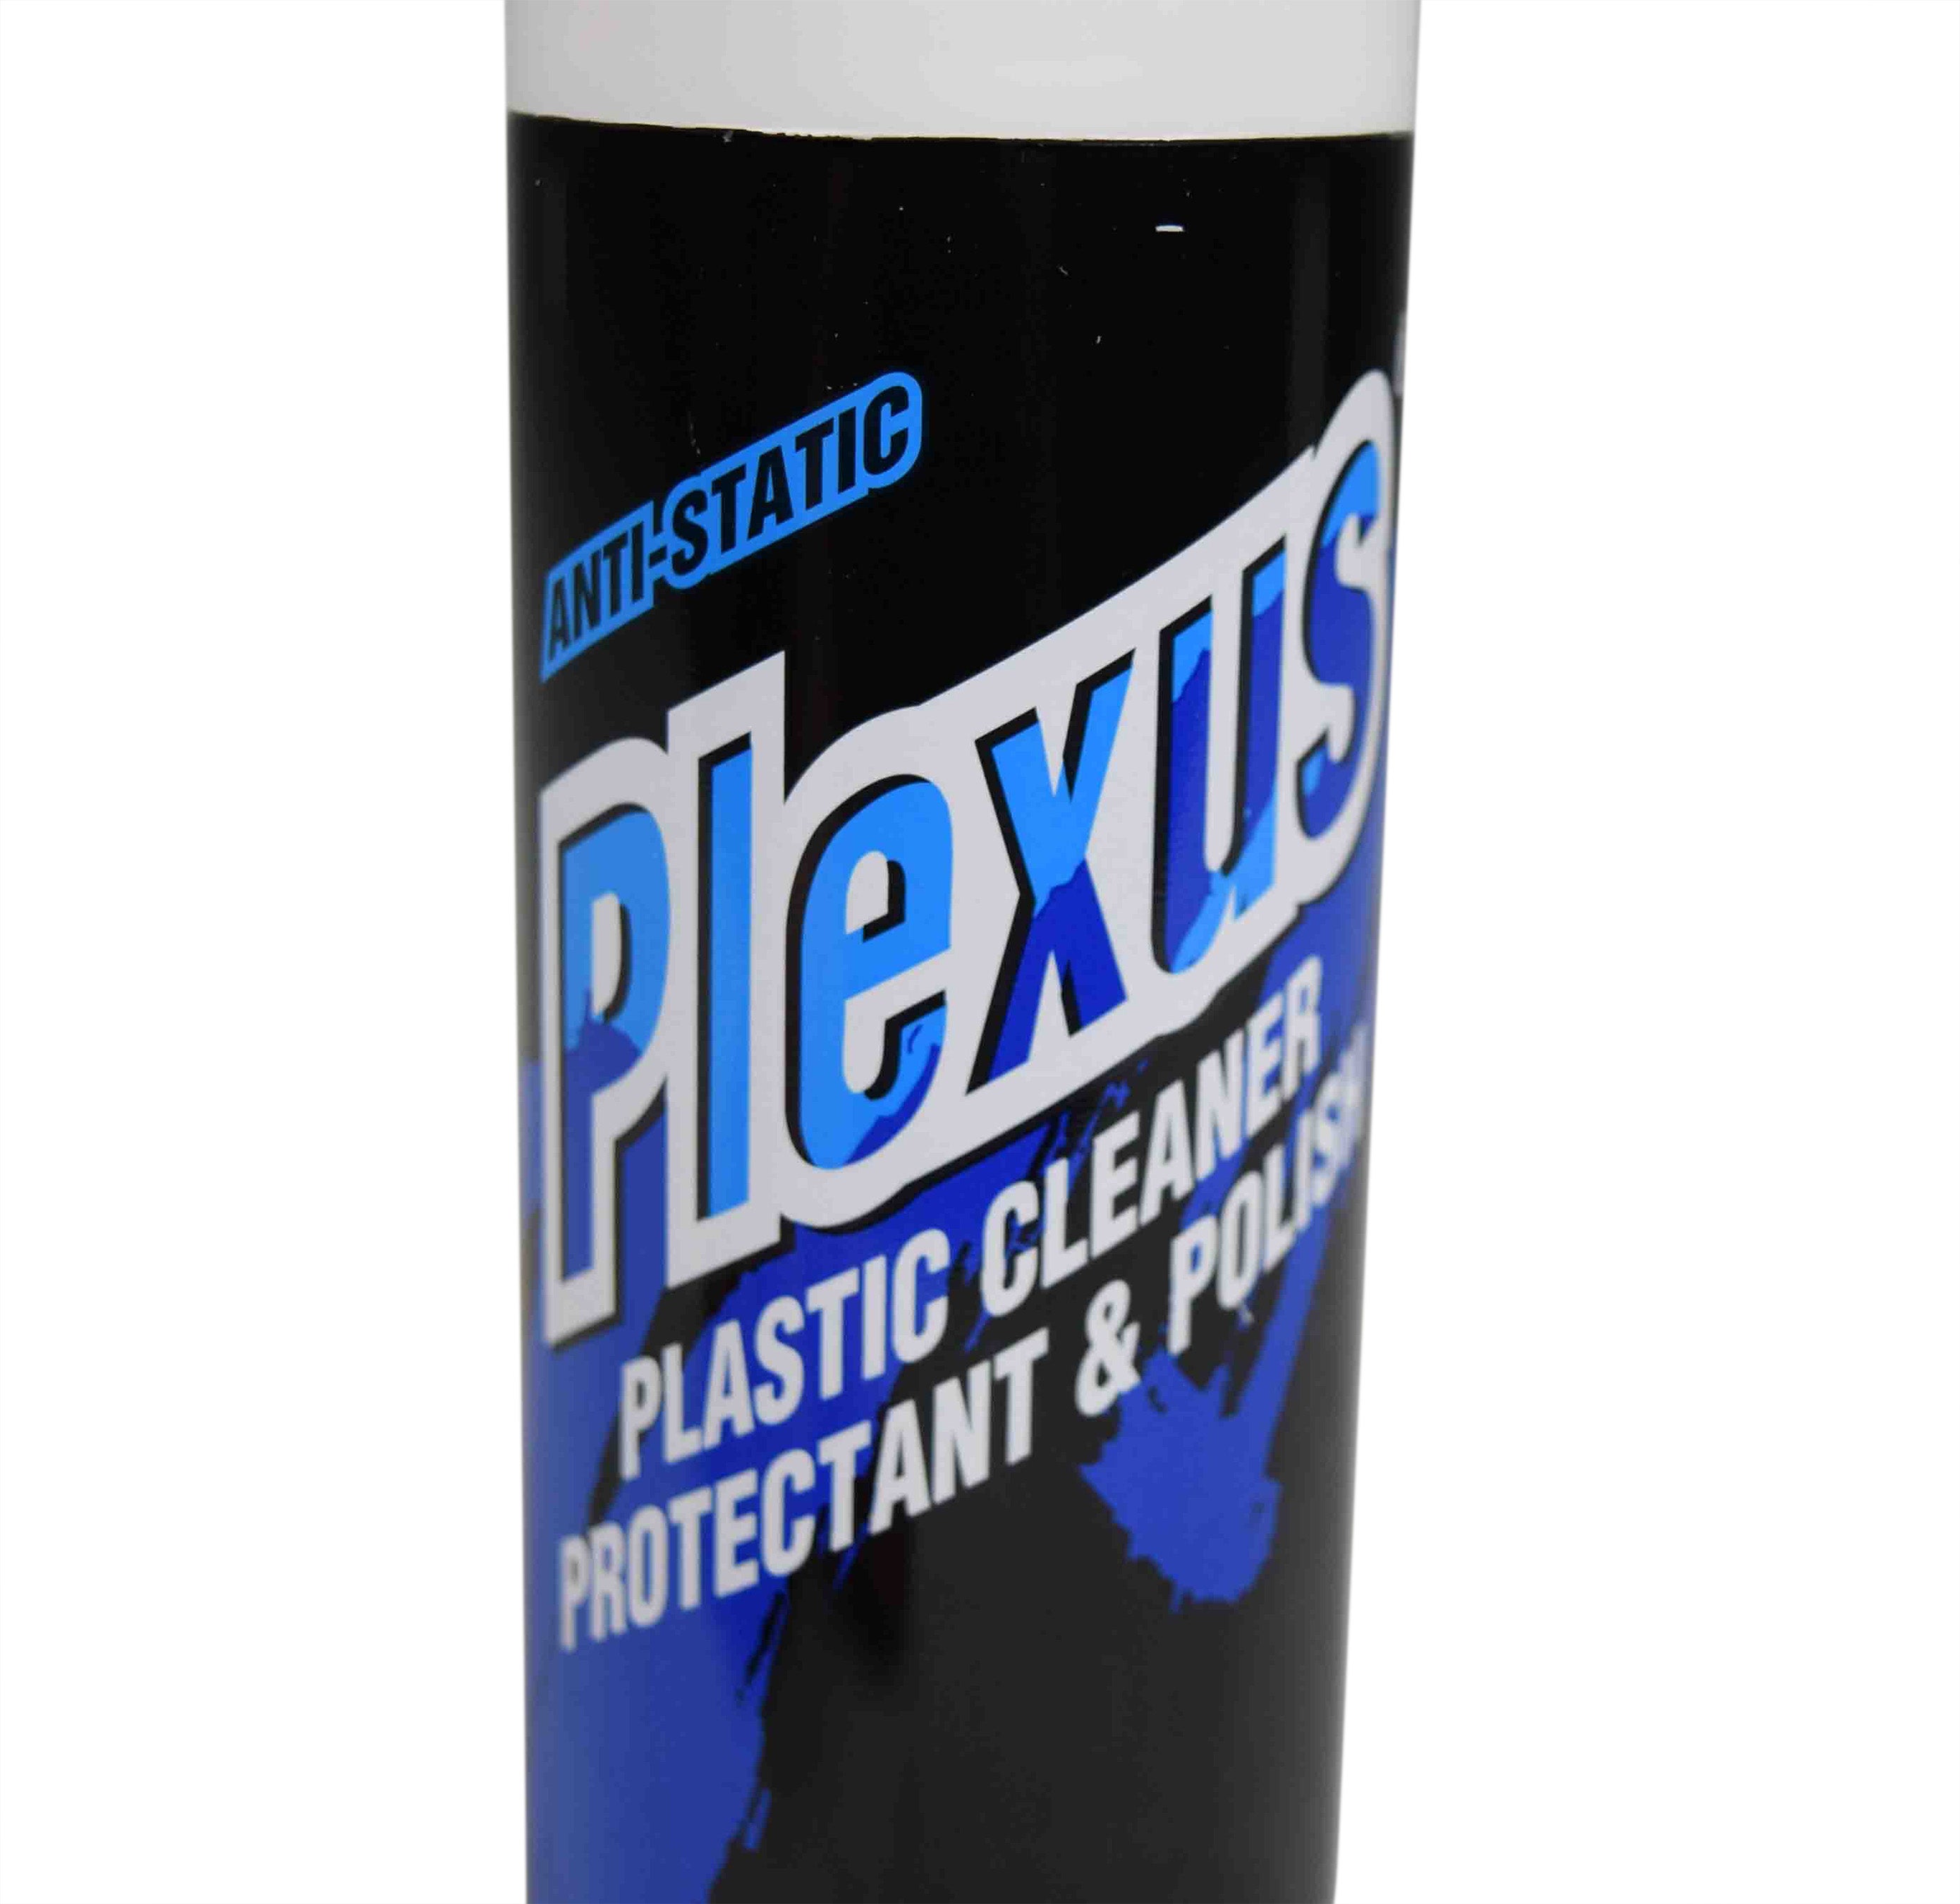 Plexus Plastic Cleaner and Protectant 20207 (7 oz)